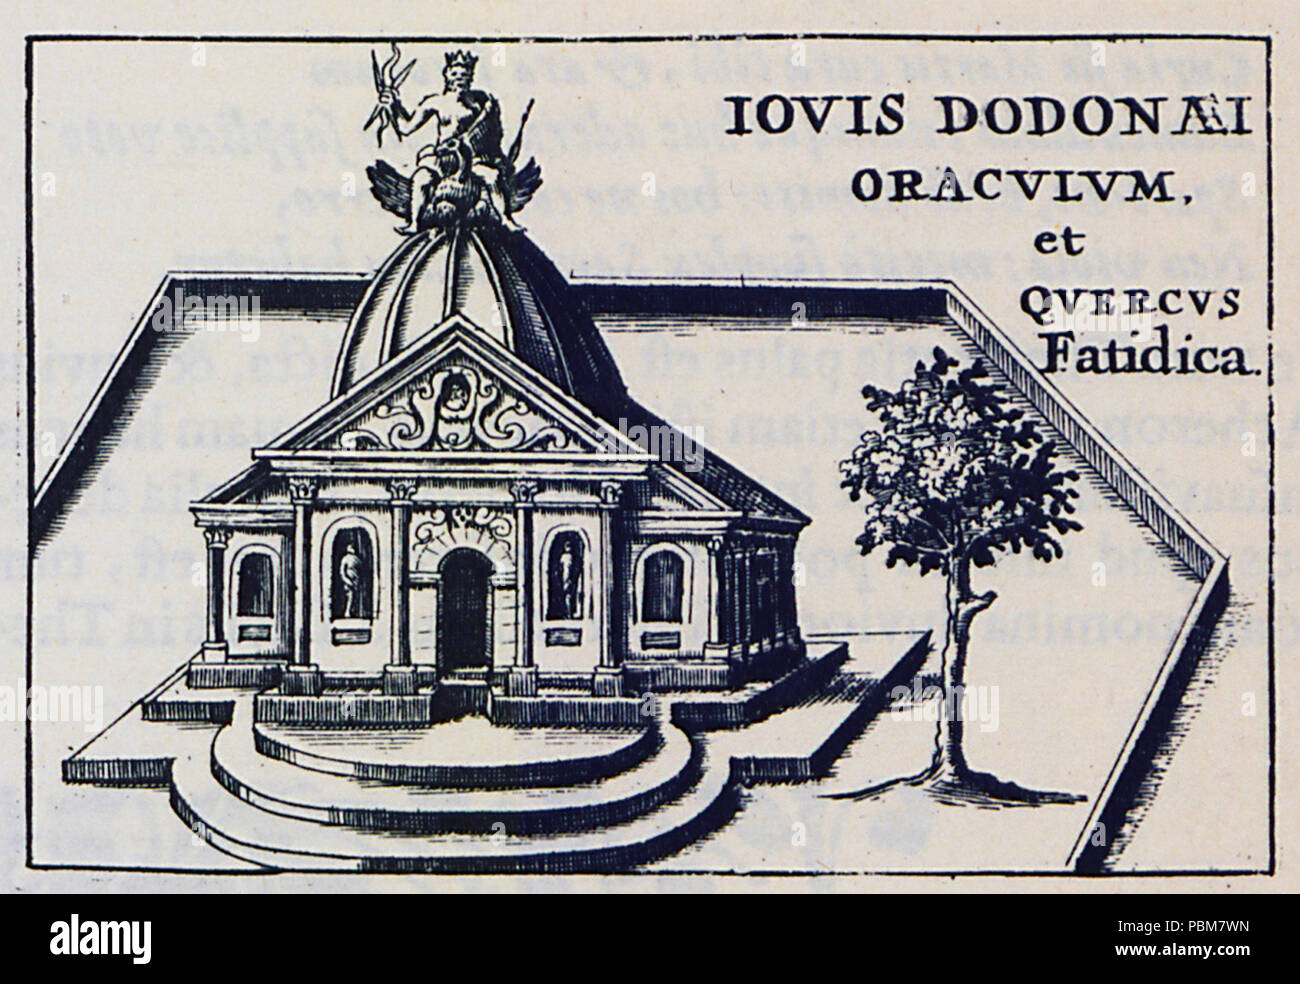 811 Iovis Dodonaei oraculum, et Querquus Fatidica - Laurenberg Johann - 1661 Stock Photo